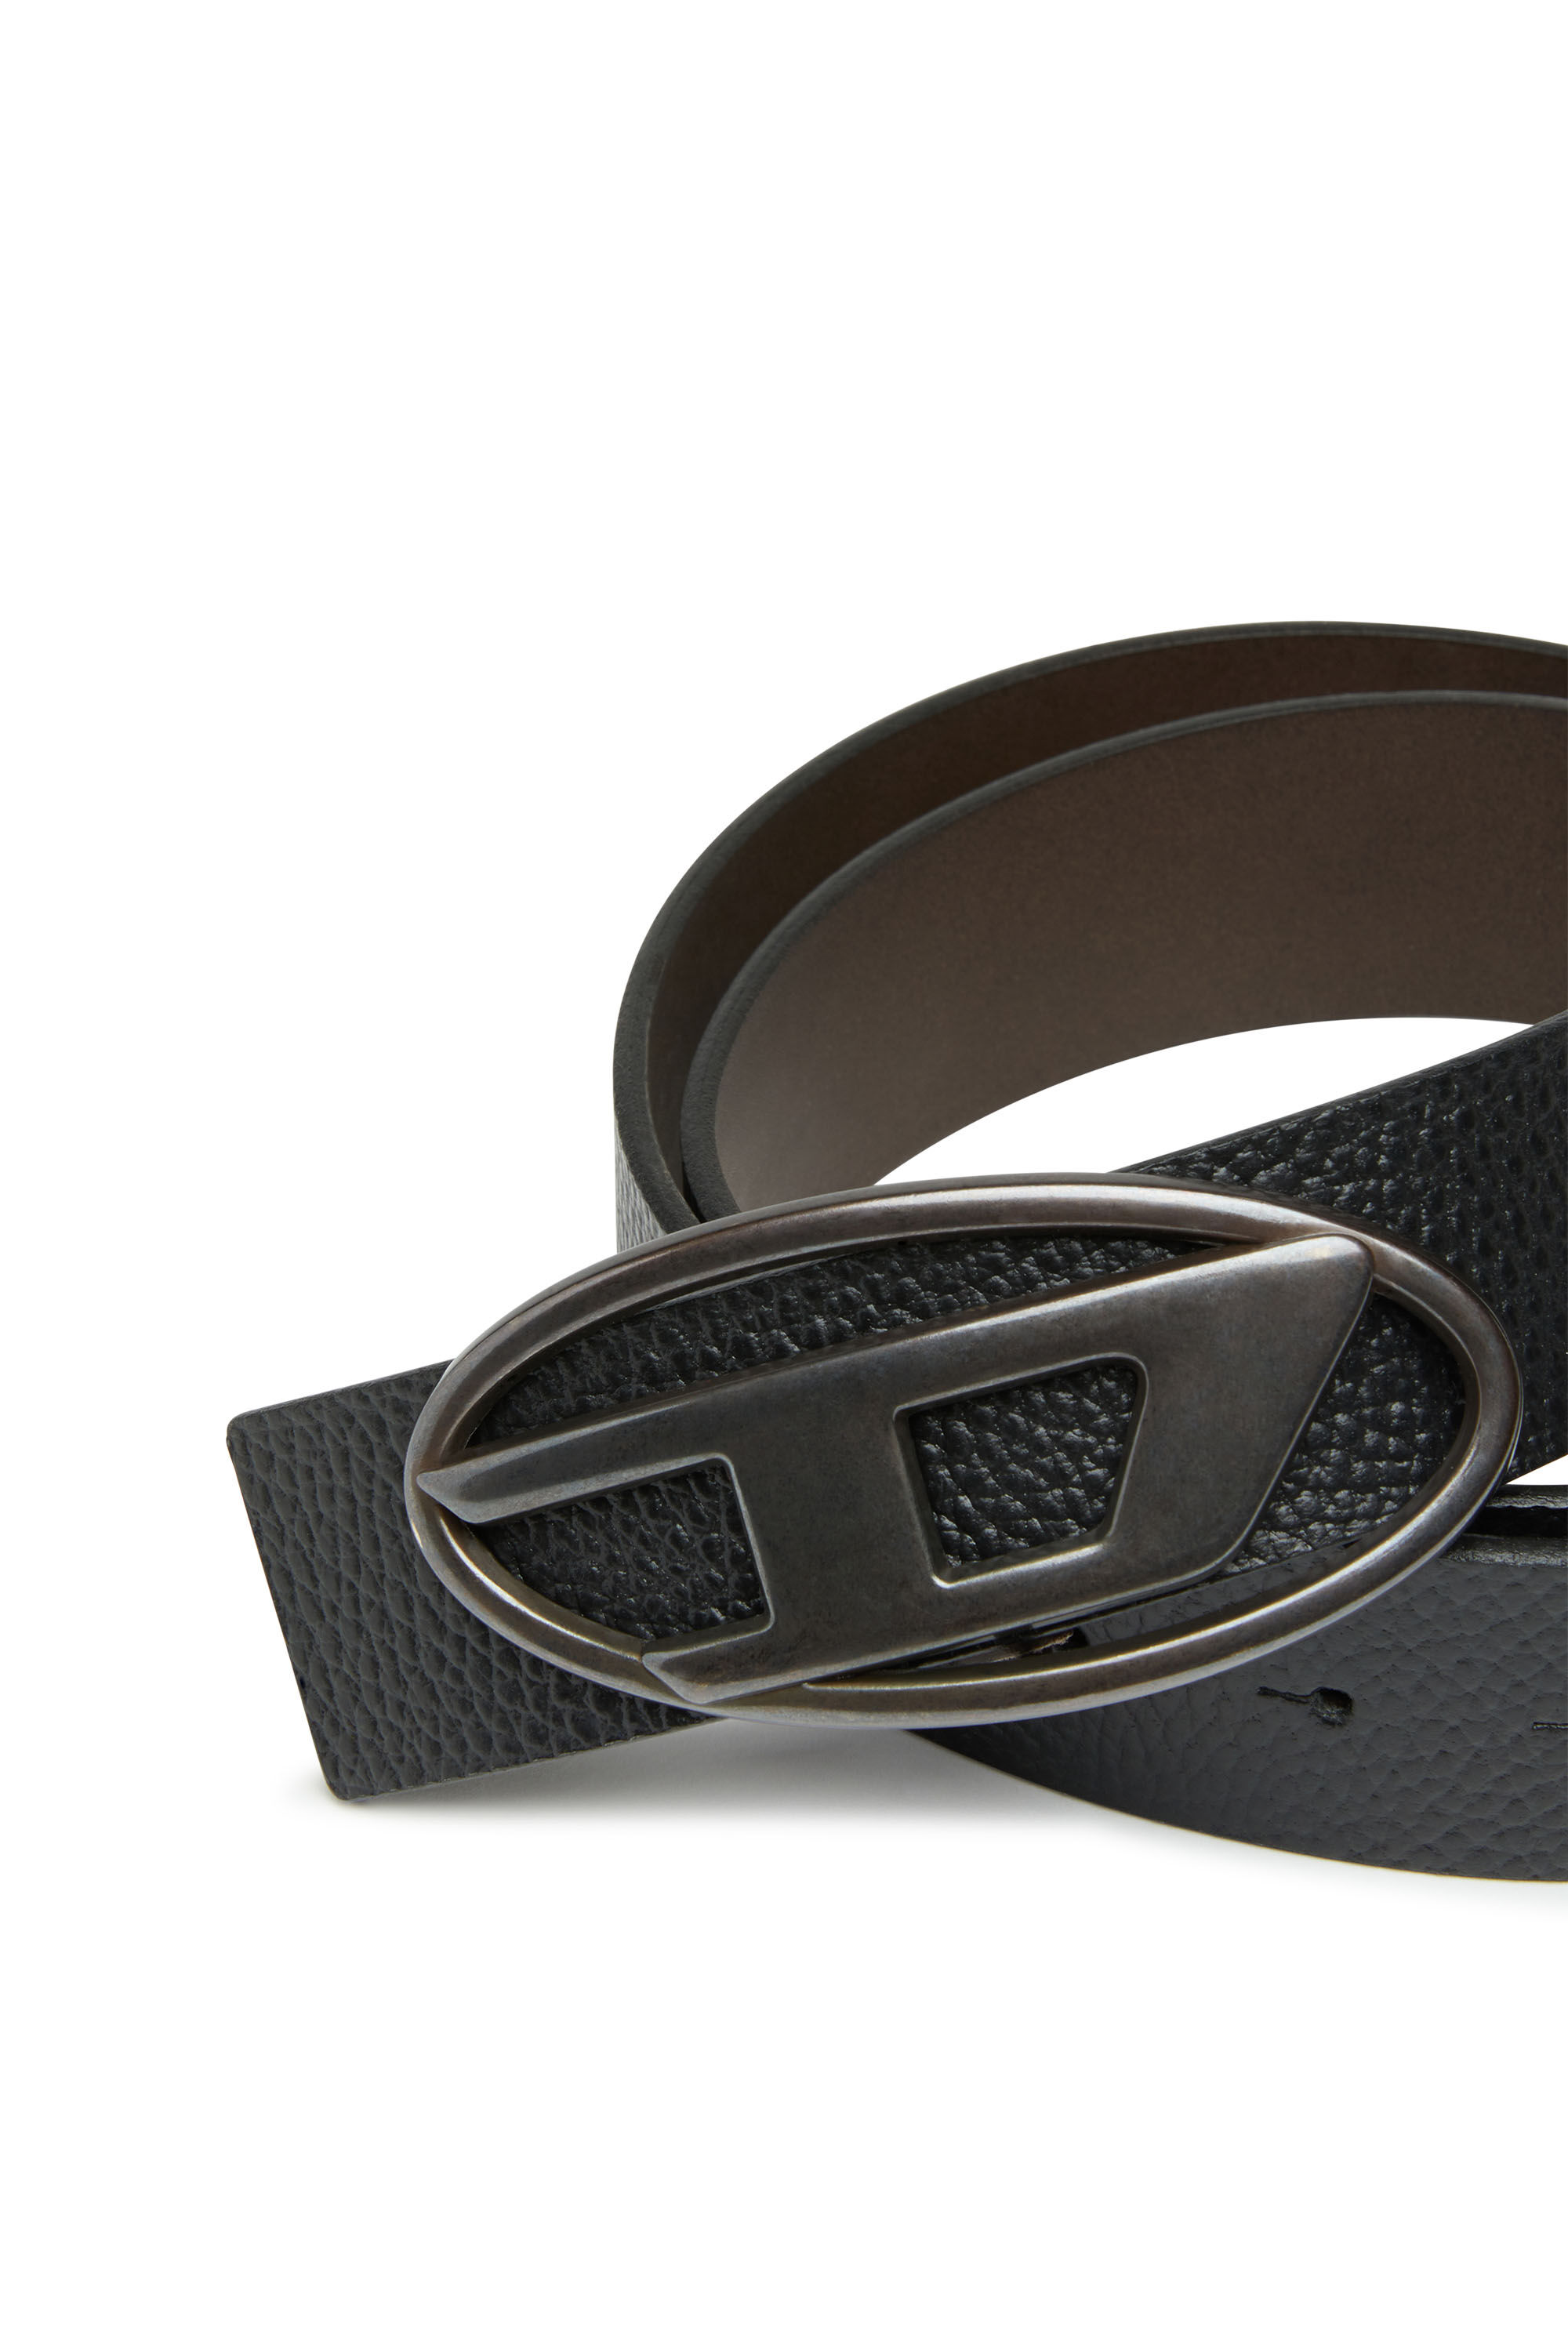 DIESEL B-1DR, Brown Men's Leather Belt